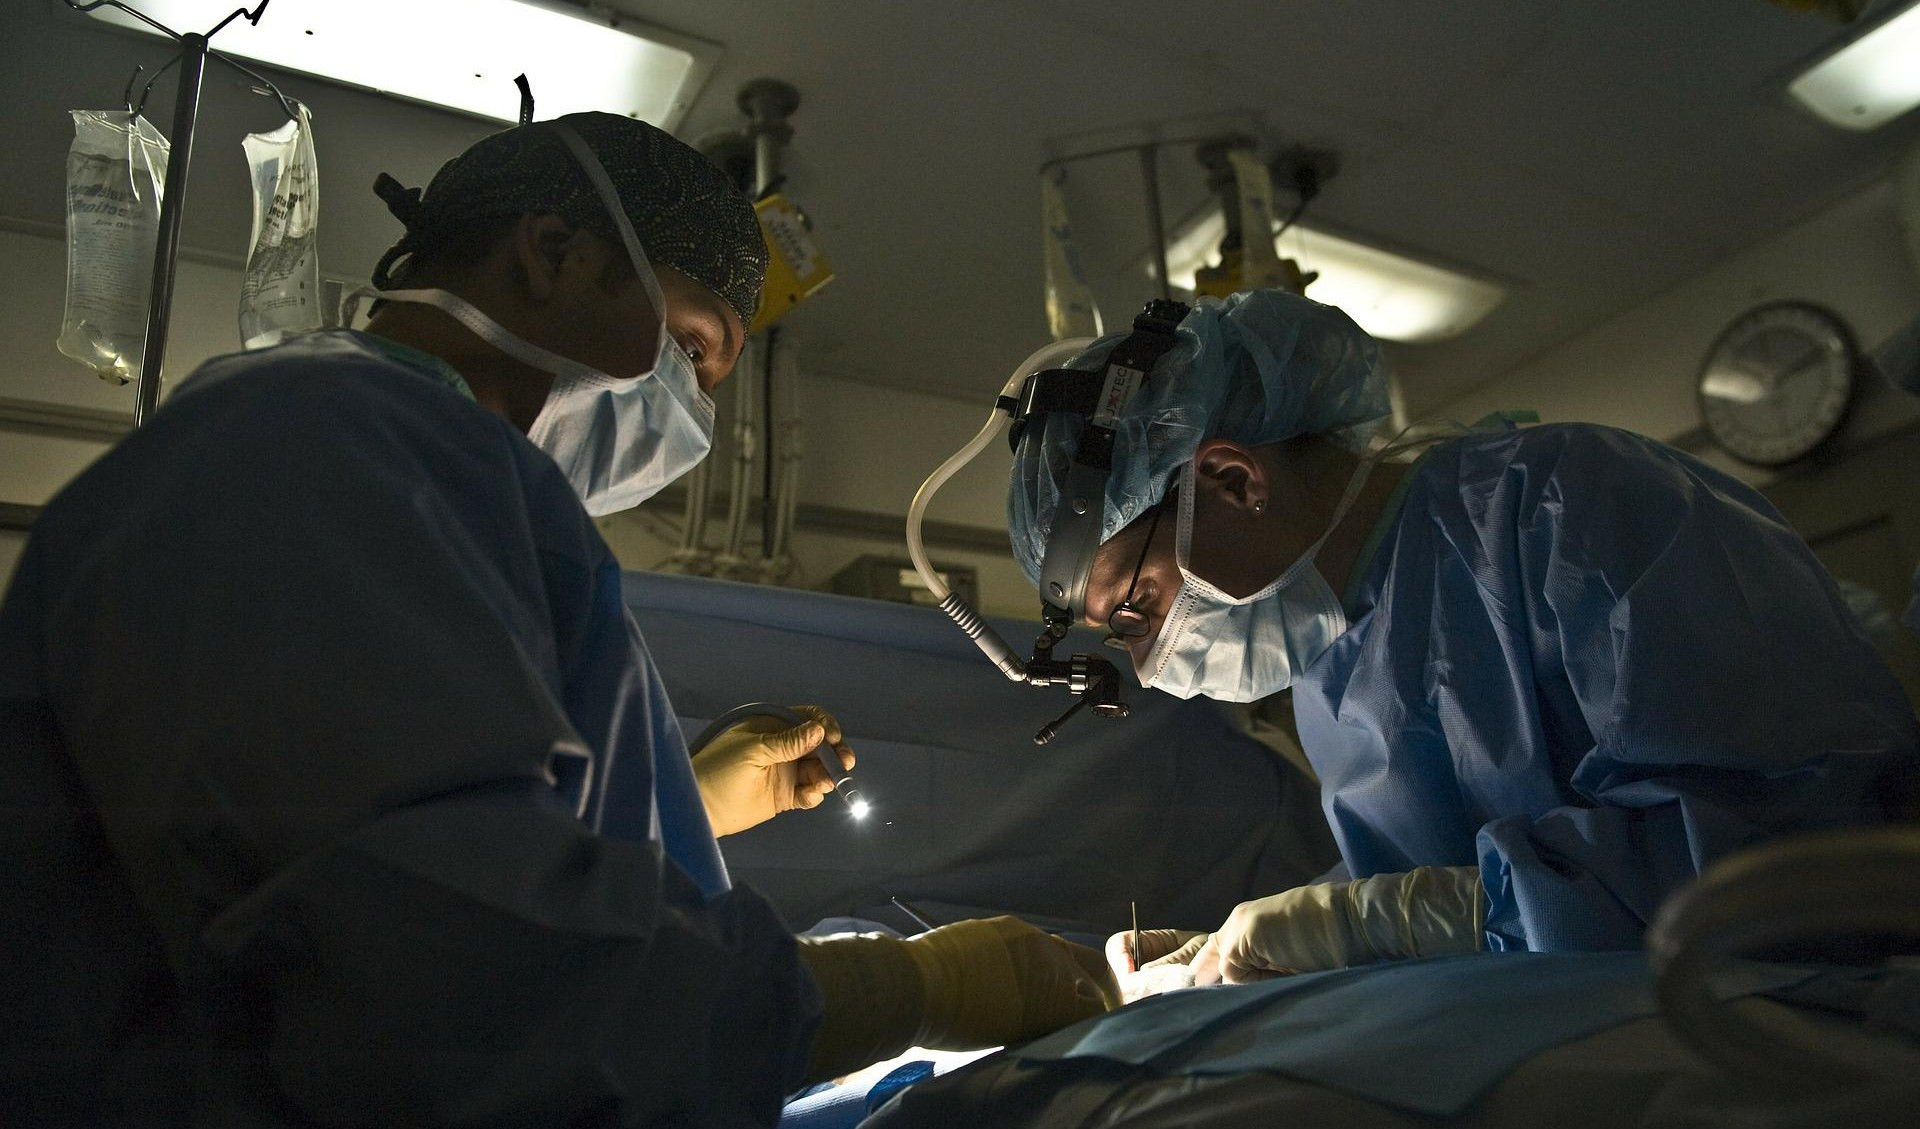 Ortopedia, medici del Galliera all'ospedale di Rapallo per arrivare a 700 interventi l'anno